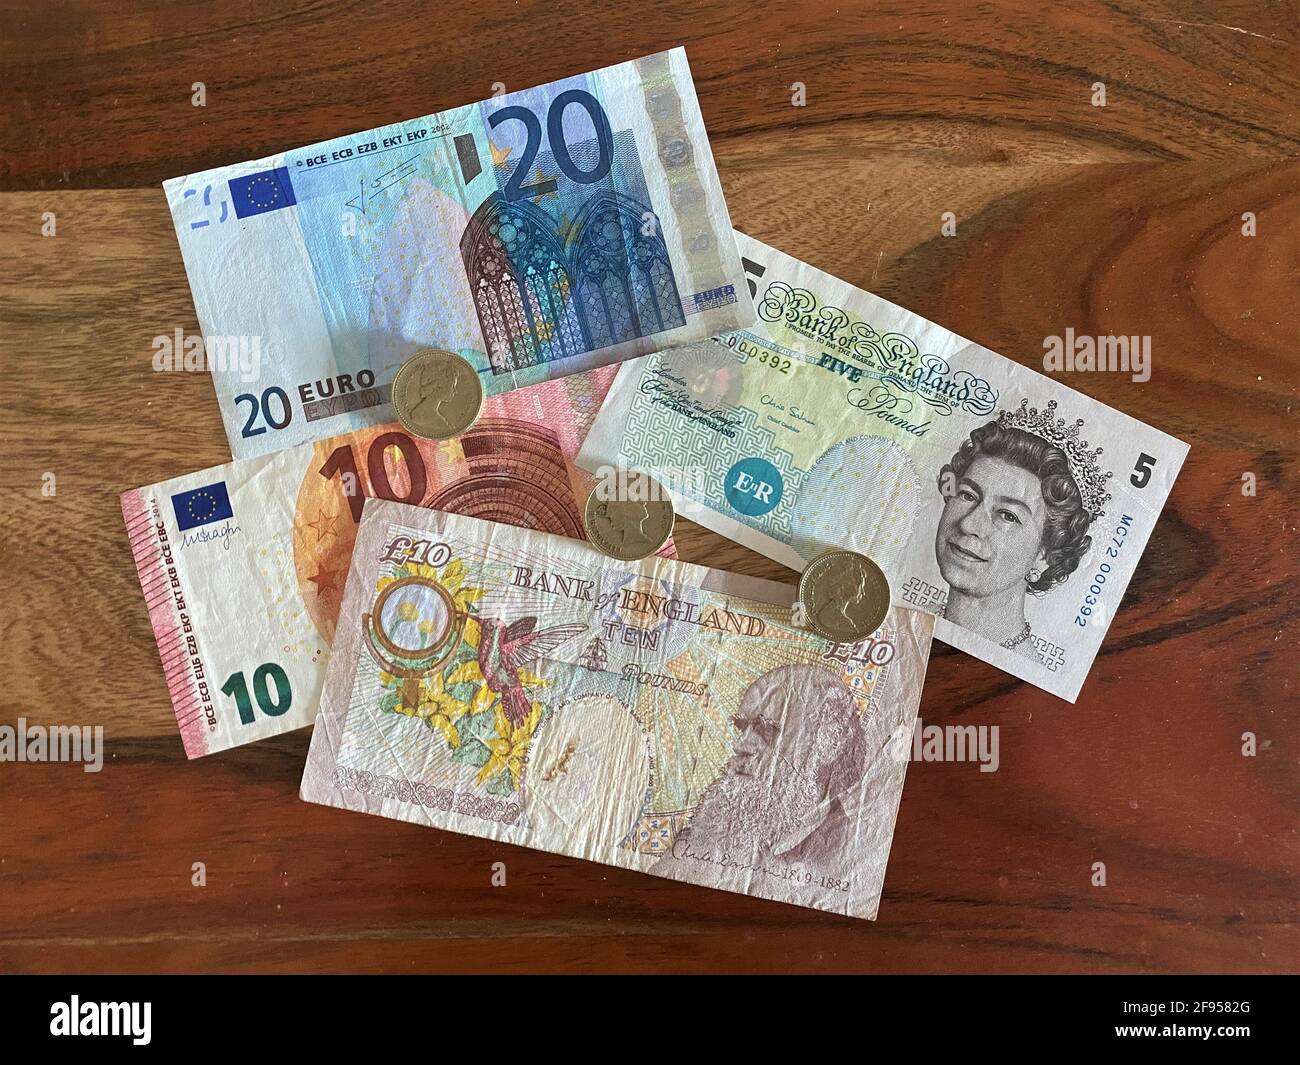 Pfund-Noten der Bank of England, Großbritannien. Geldscheine und Münzen Stockfoto